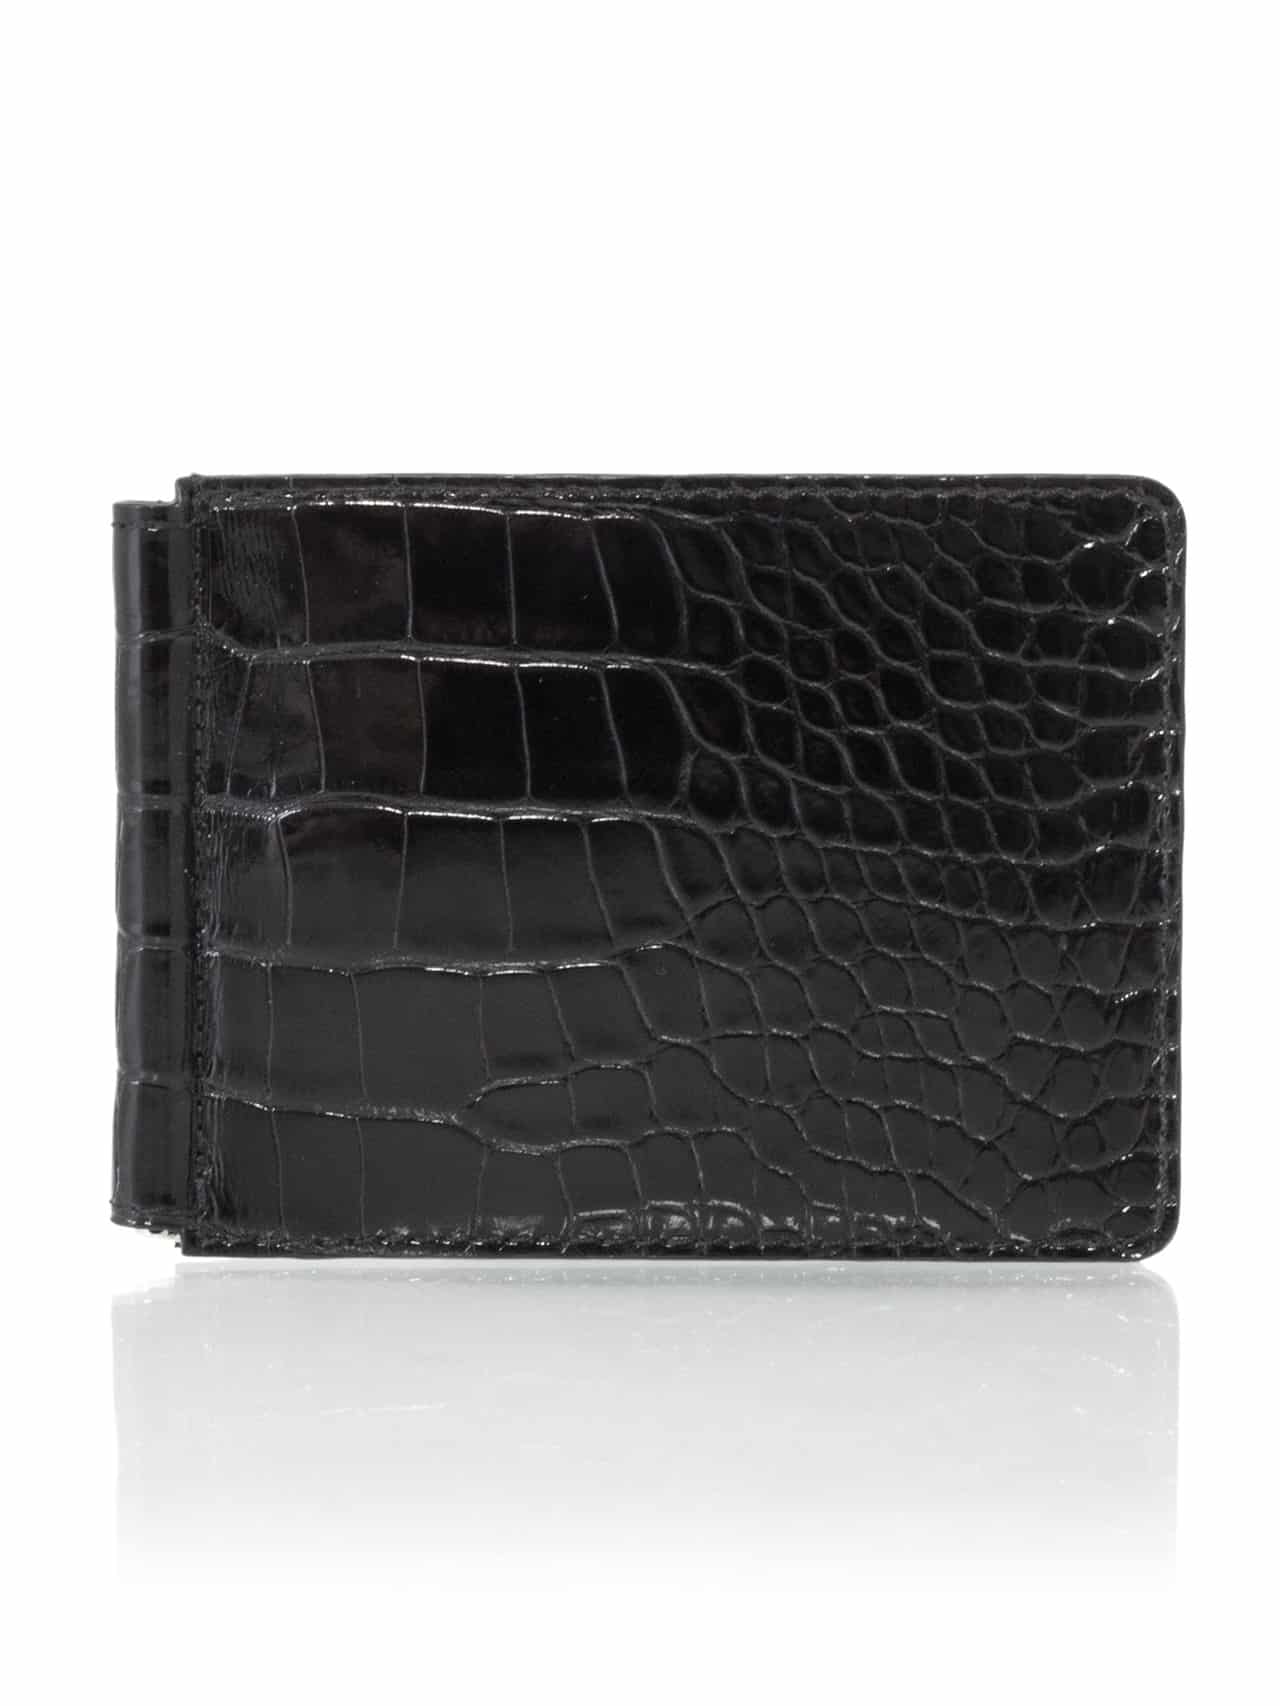 Money clip wallet black shiny alligator - Maison Jean Rousseau